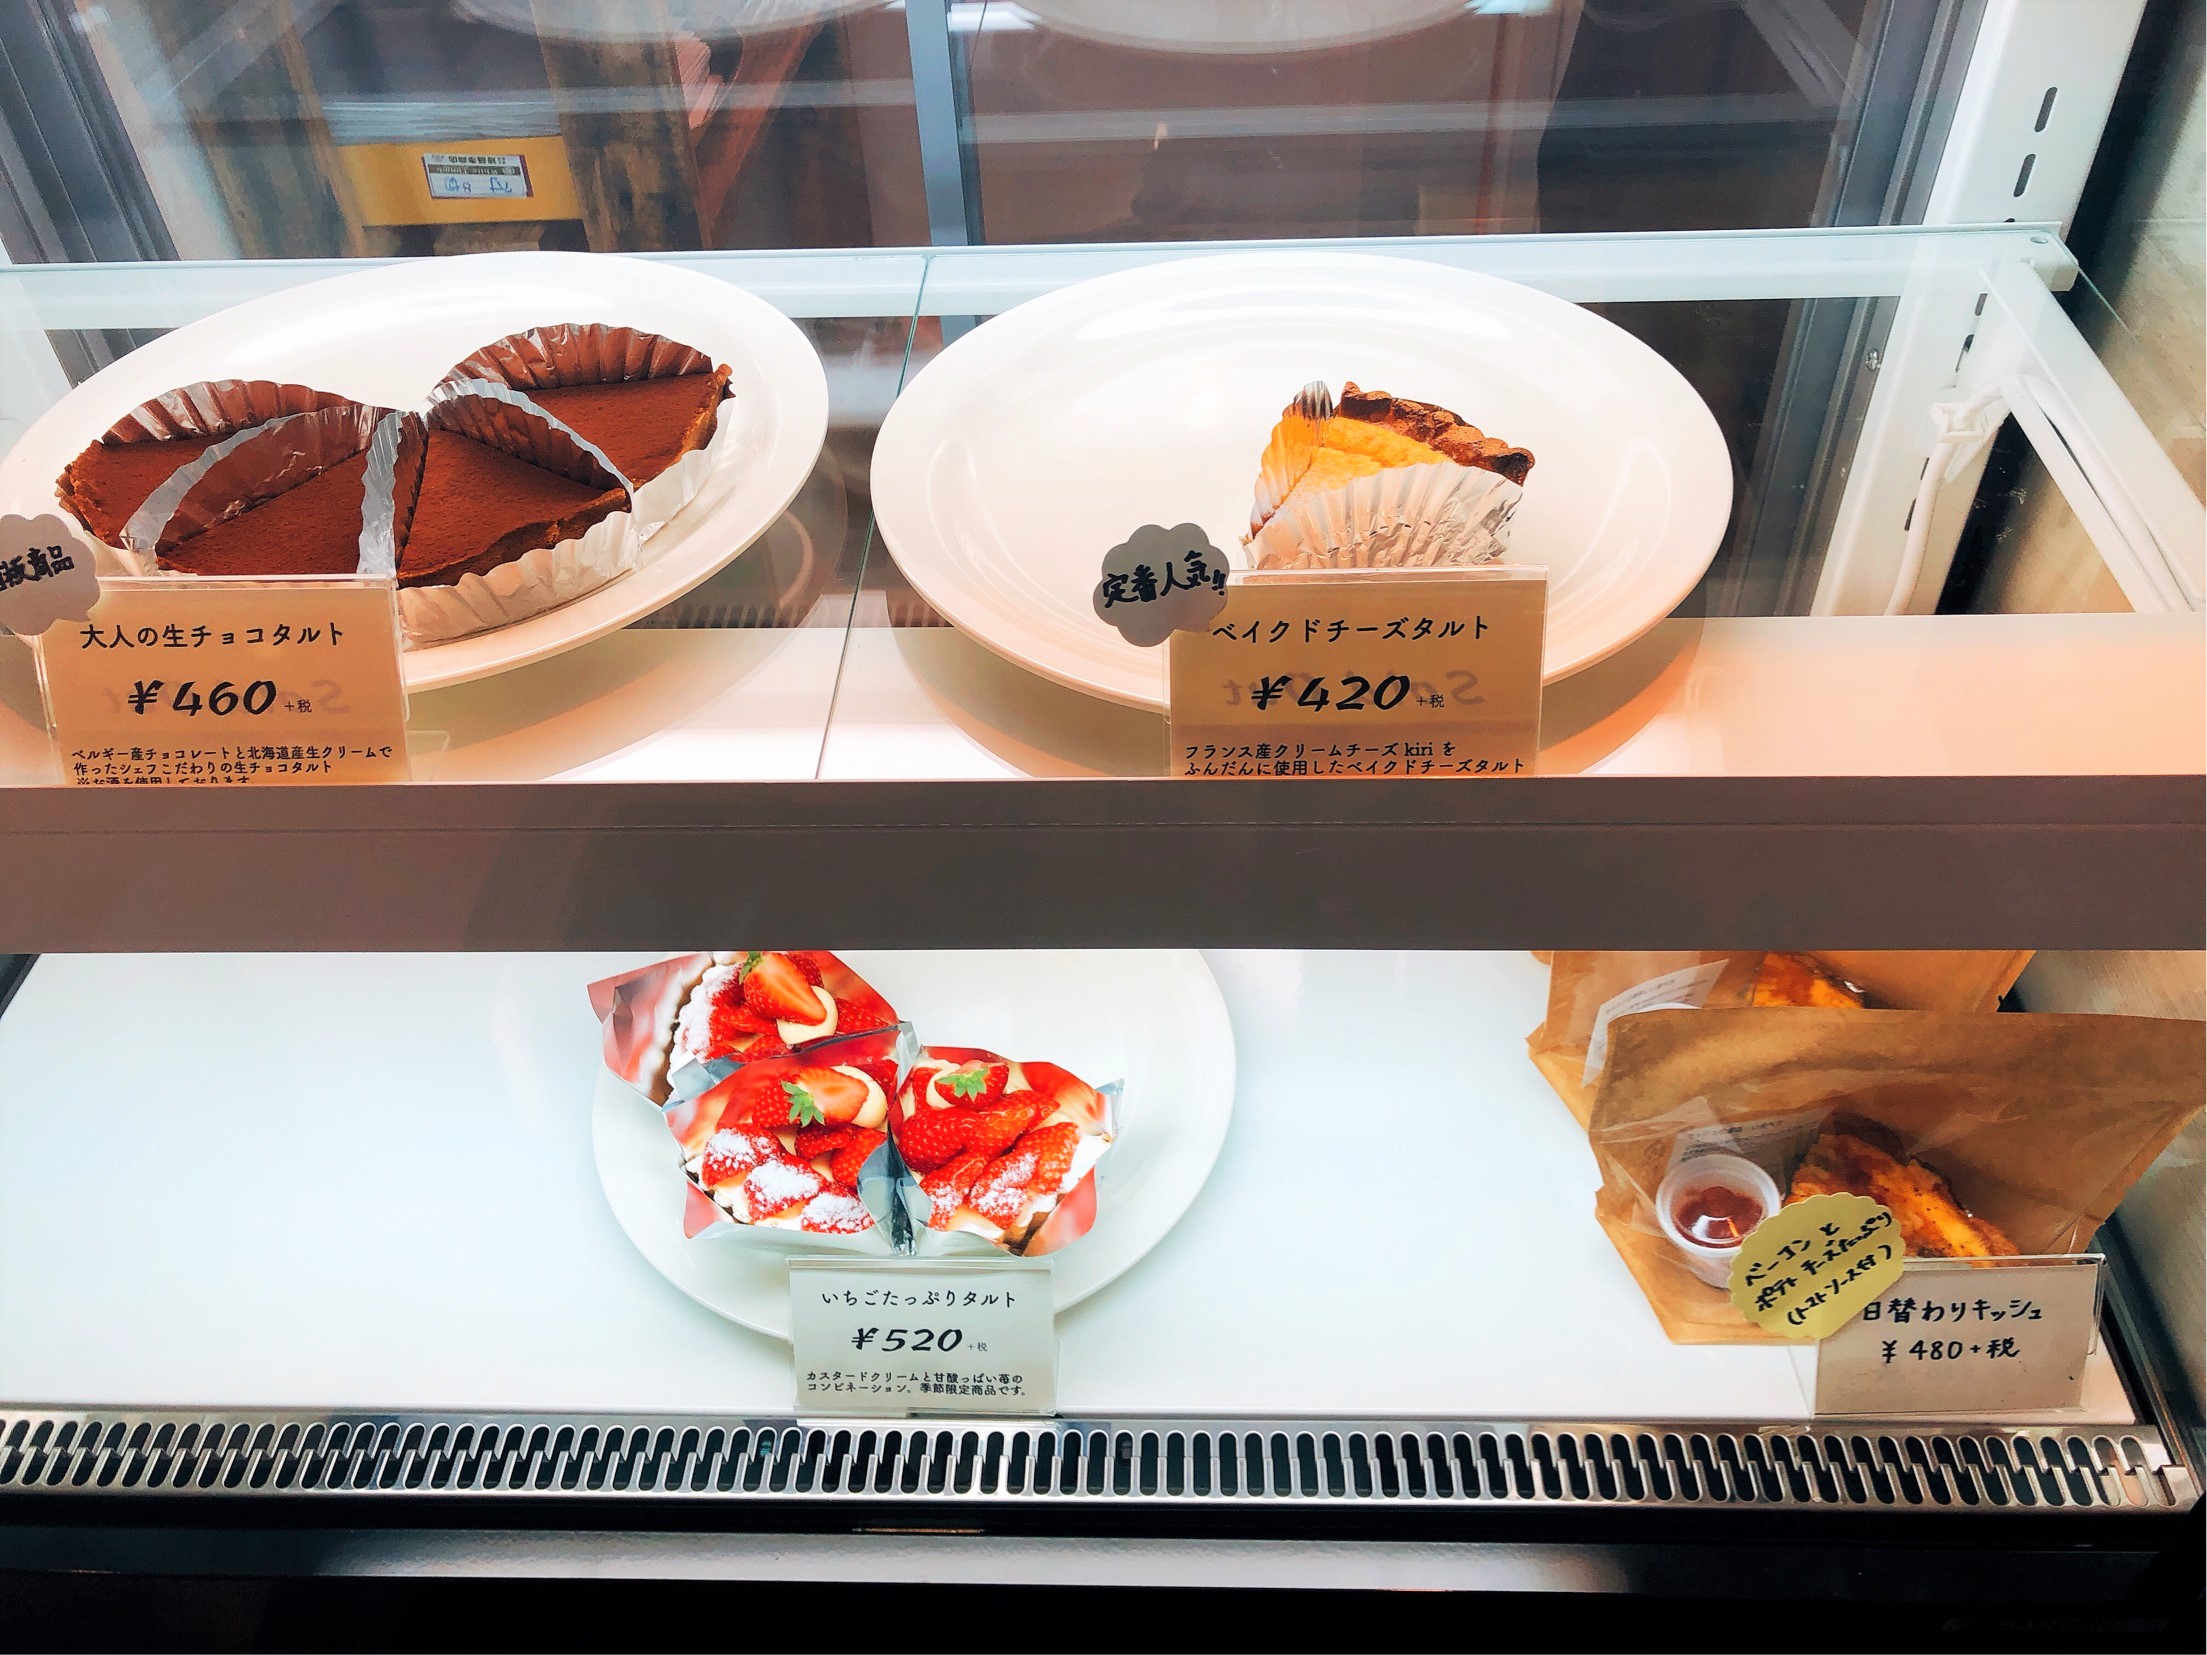 葉山で人気のケーキ屋さん、タルト専門店Maron（マロン）のケーキたち。この日はラジオでお店の紹介をされたため、いつもより早くなくなってしまったそう。